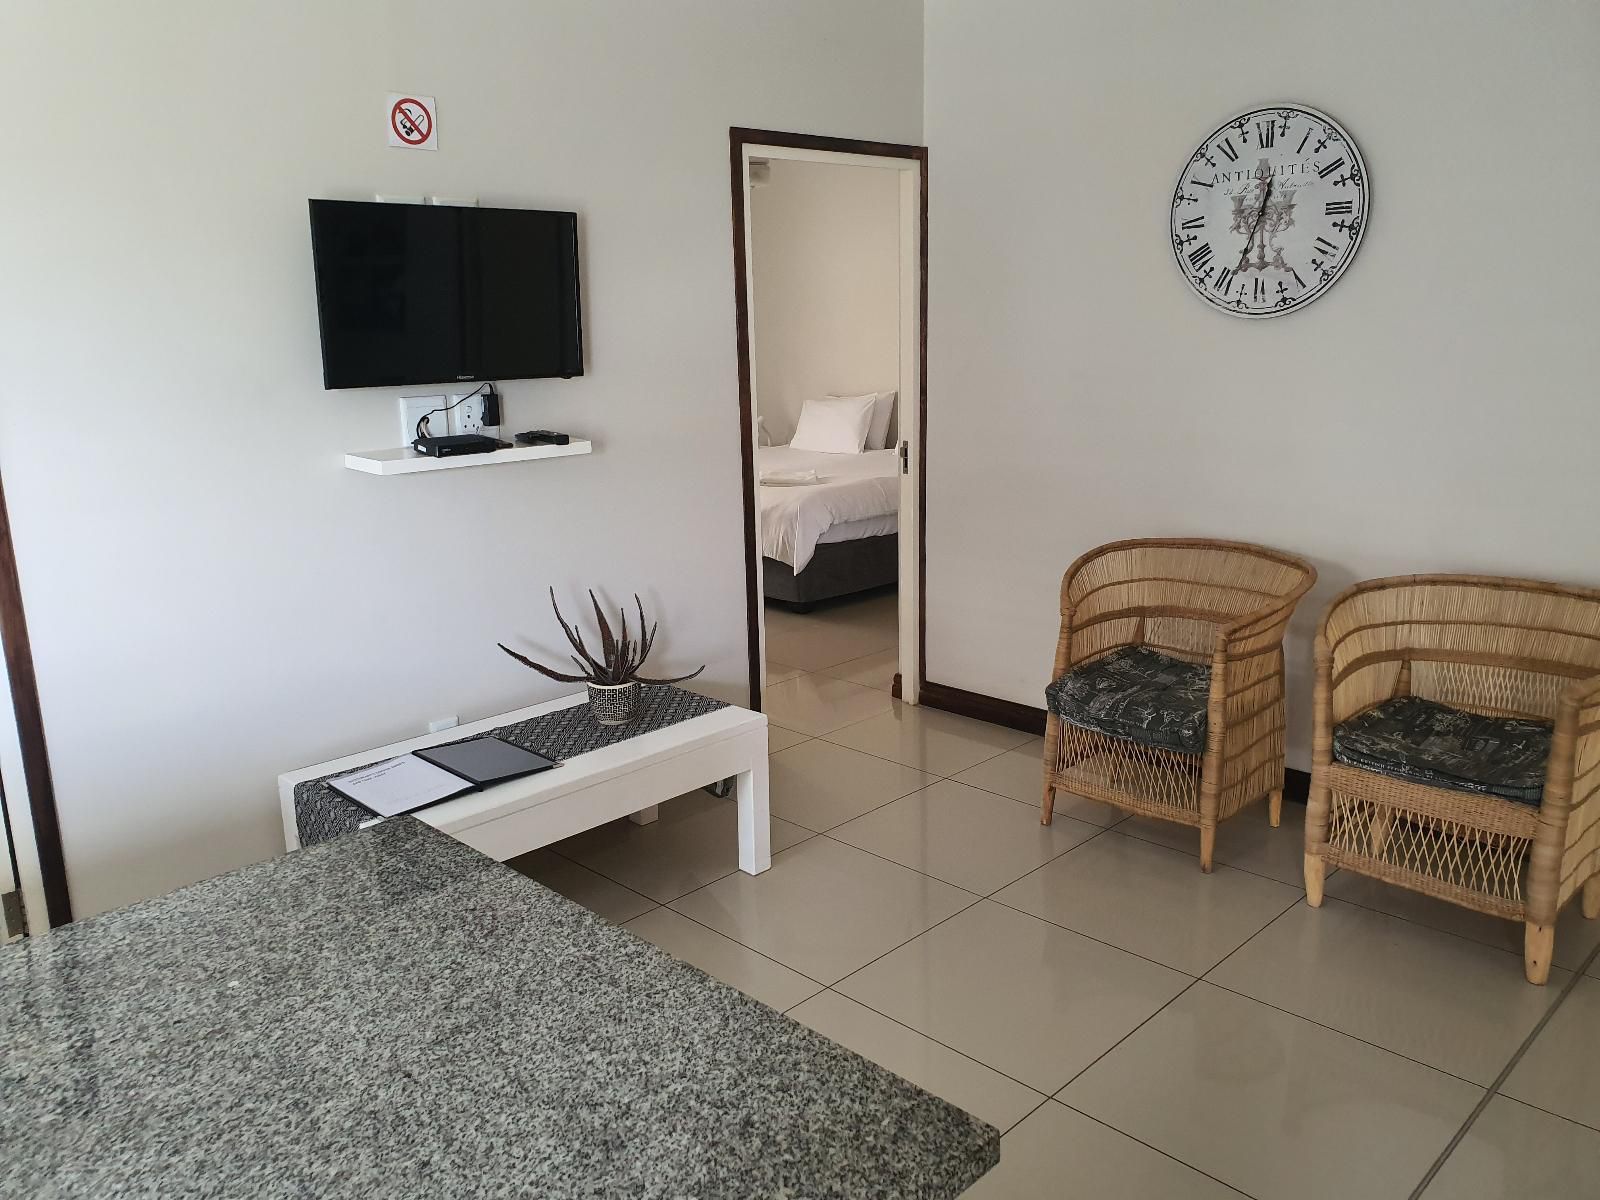 Westwood Skye Westville Durban Kwazulu Natal South Africa Unsaturated, Bedroom